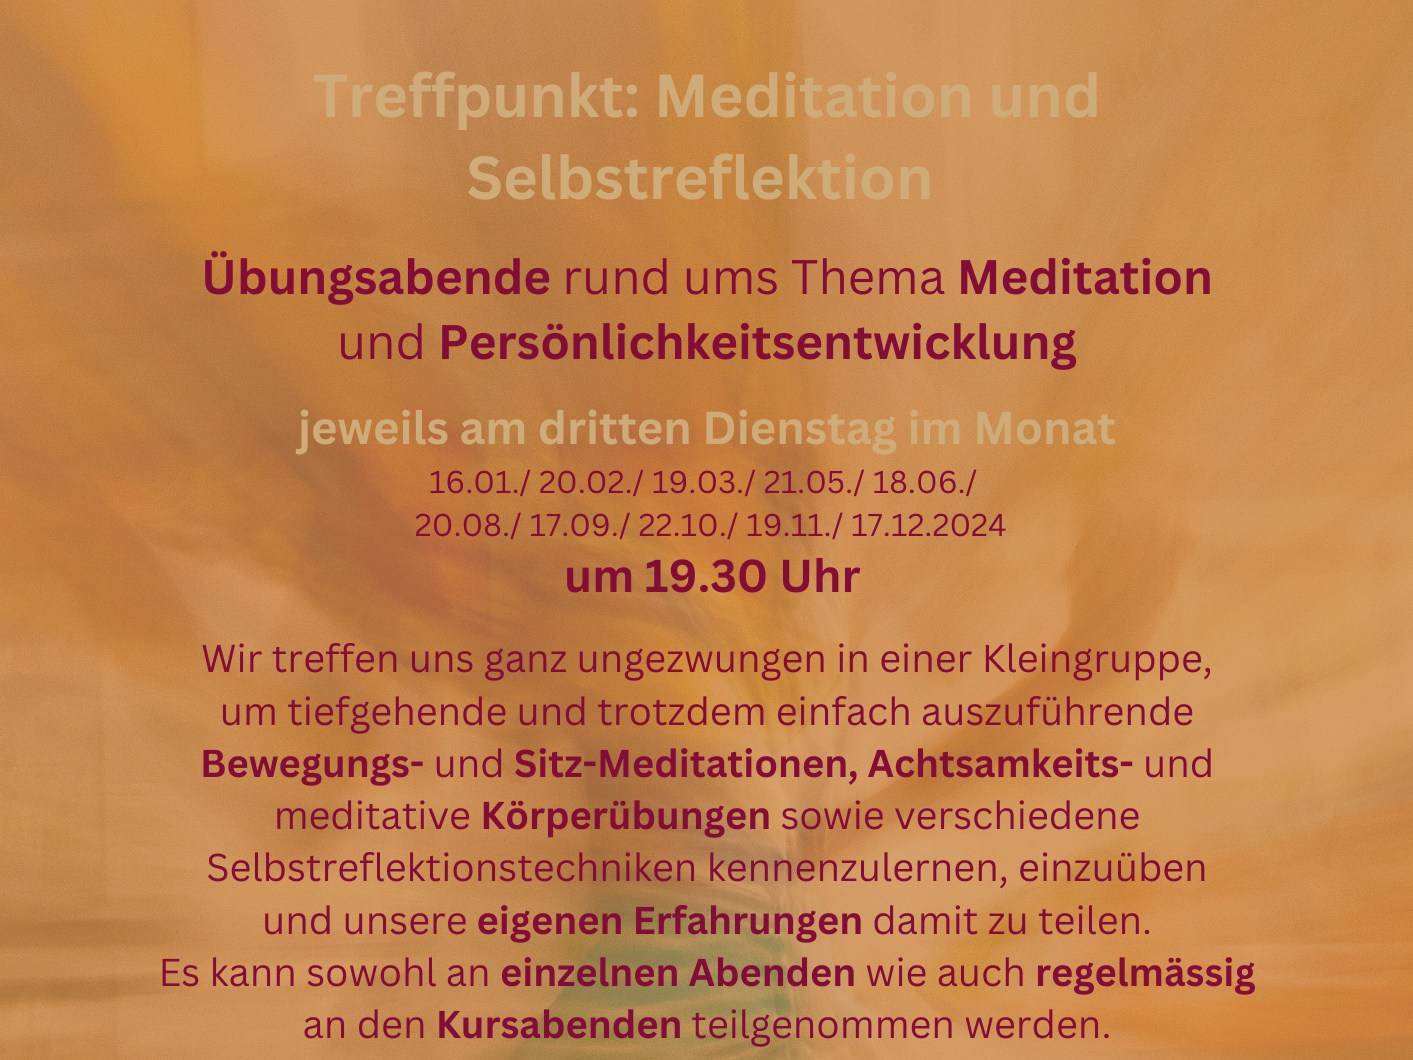 Treffpunkt: Meditation und Selbstreflektion-1